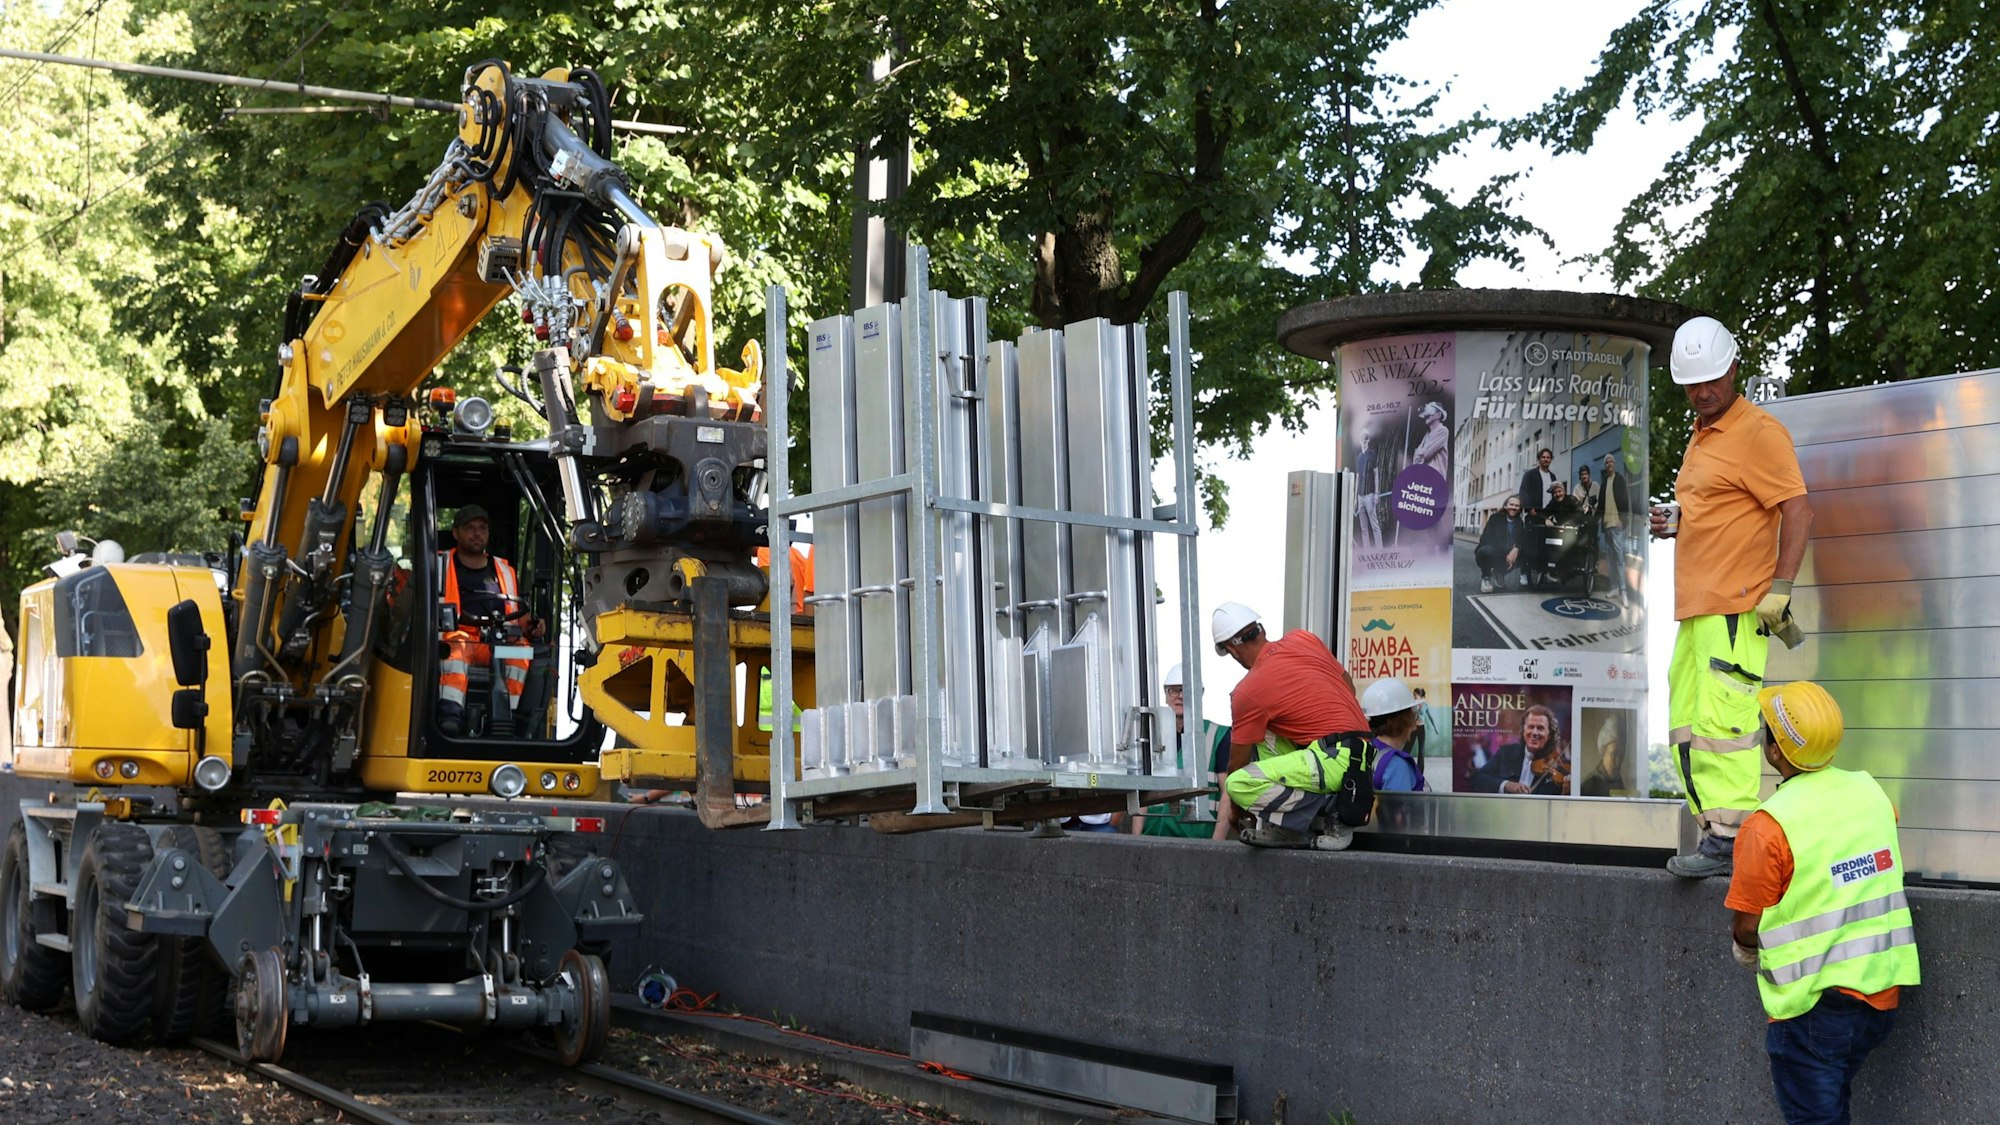 Personen bauen eine mobile Wand auf, die über ein Schienenfahrzeug angeliefert wird.